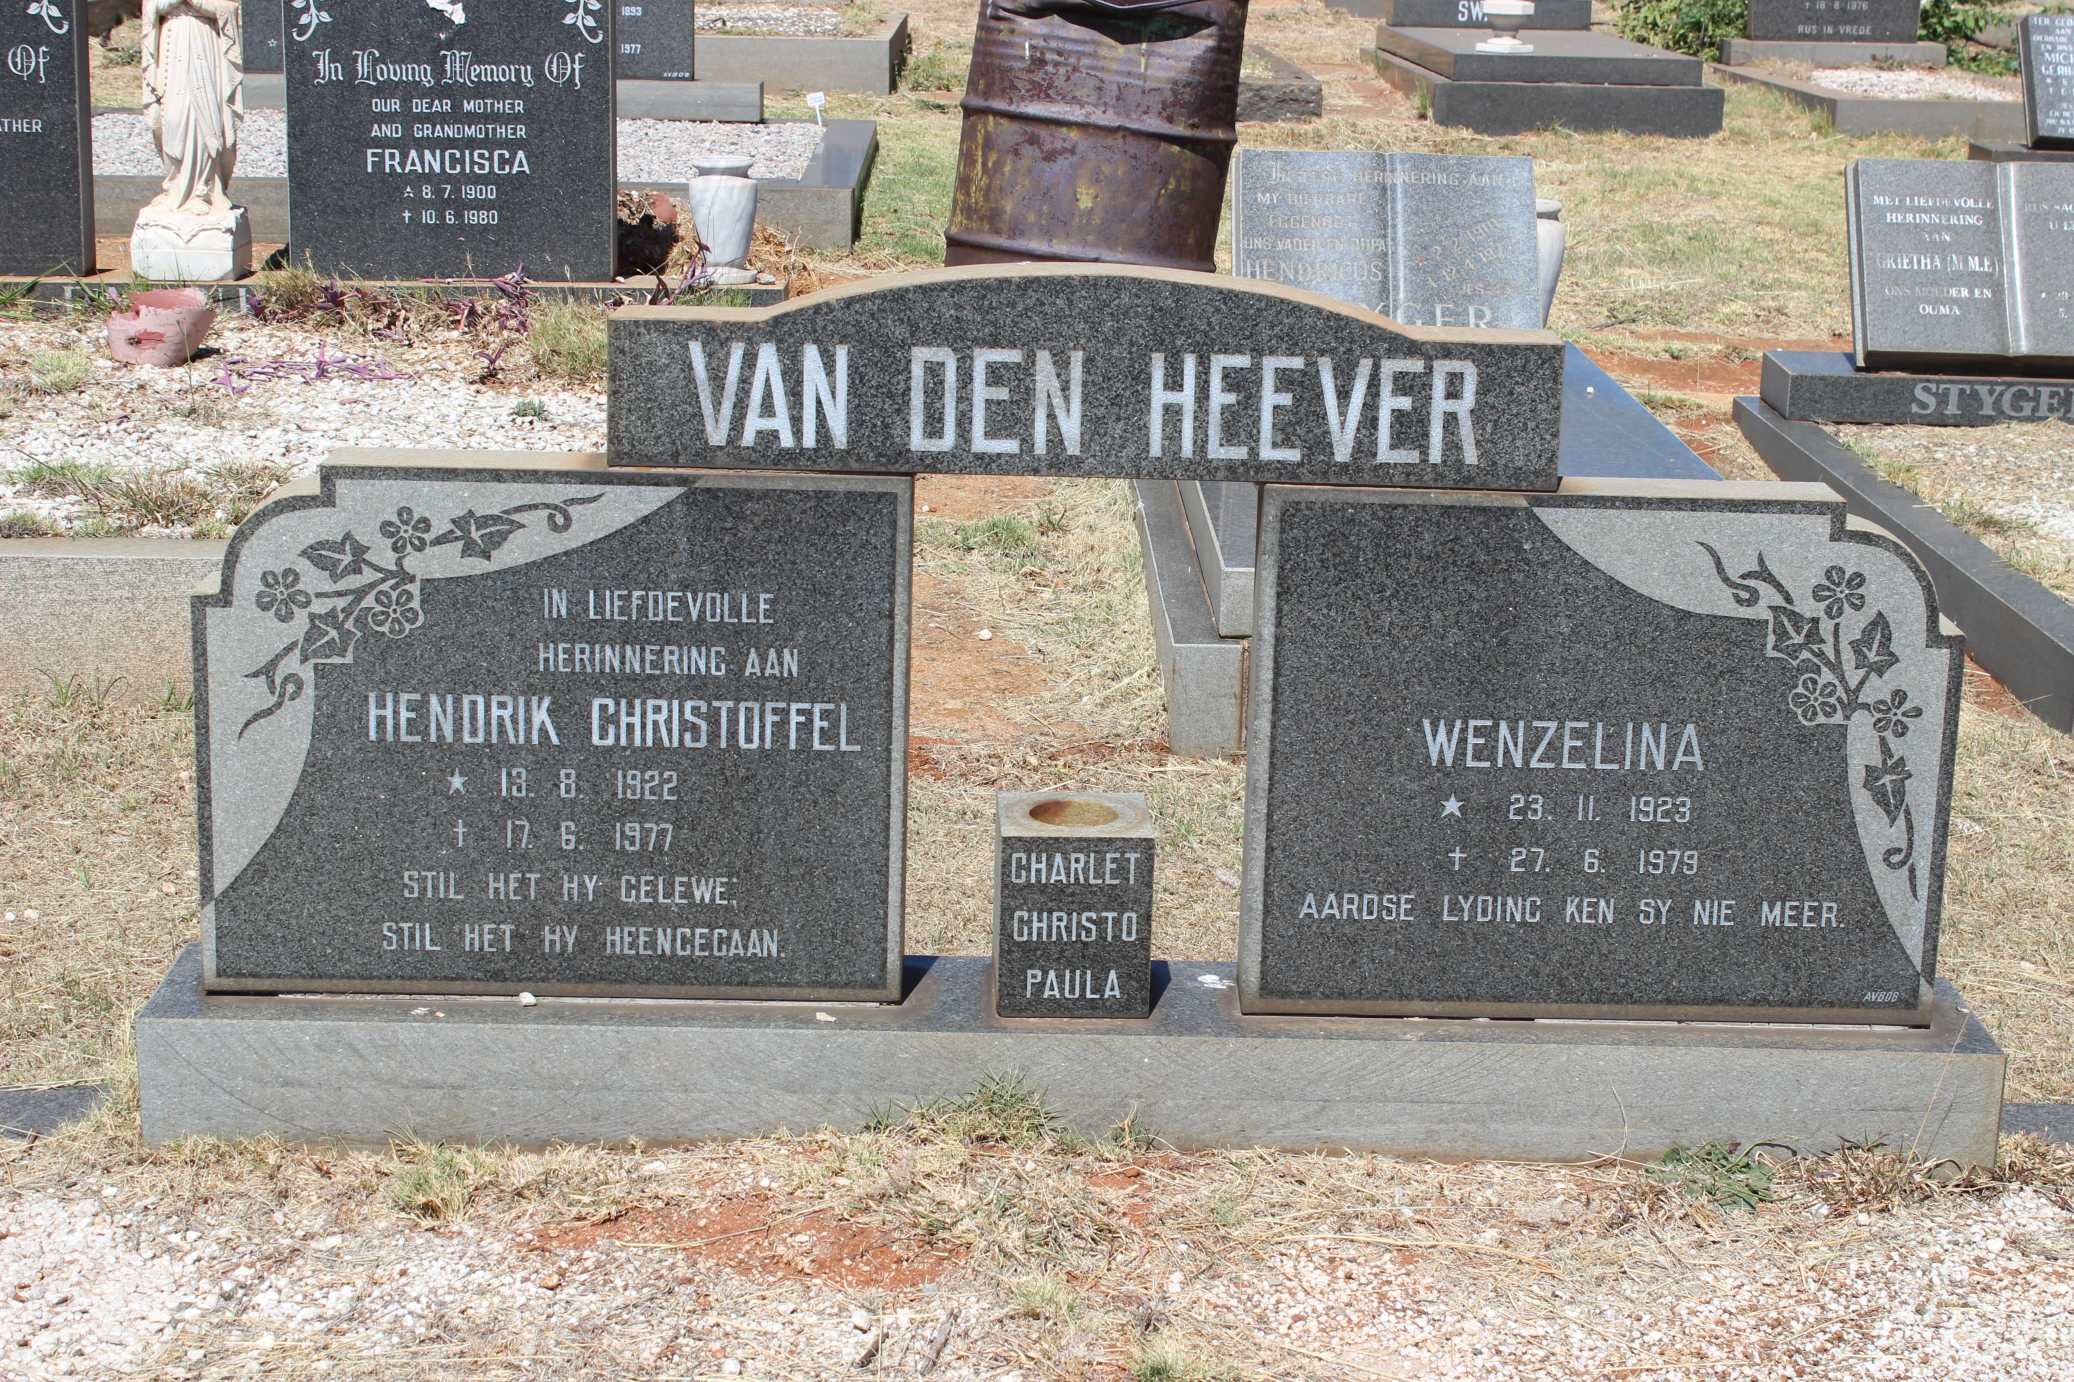 HEEVER Hendrik Christoffel, van den 1922-1977 & Wenzelina 1923-1979